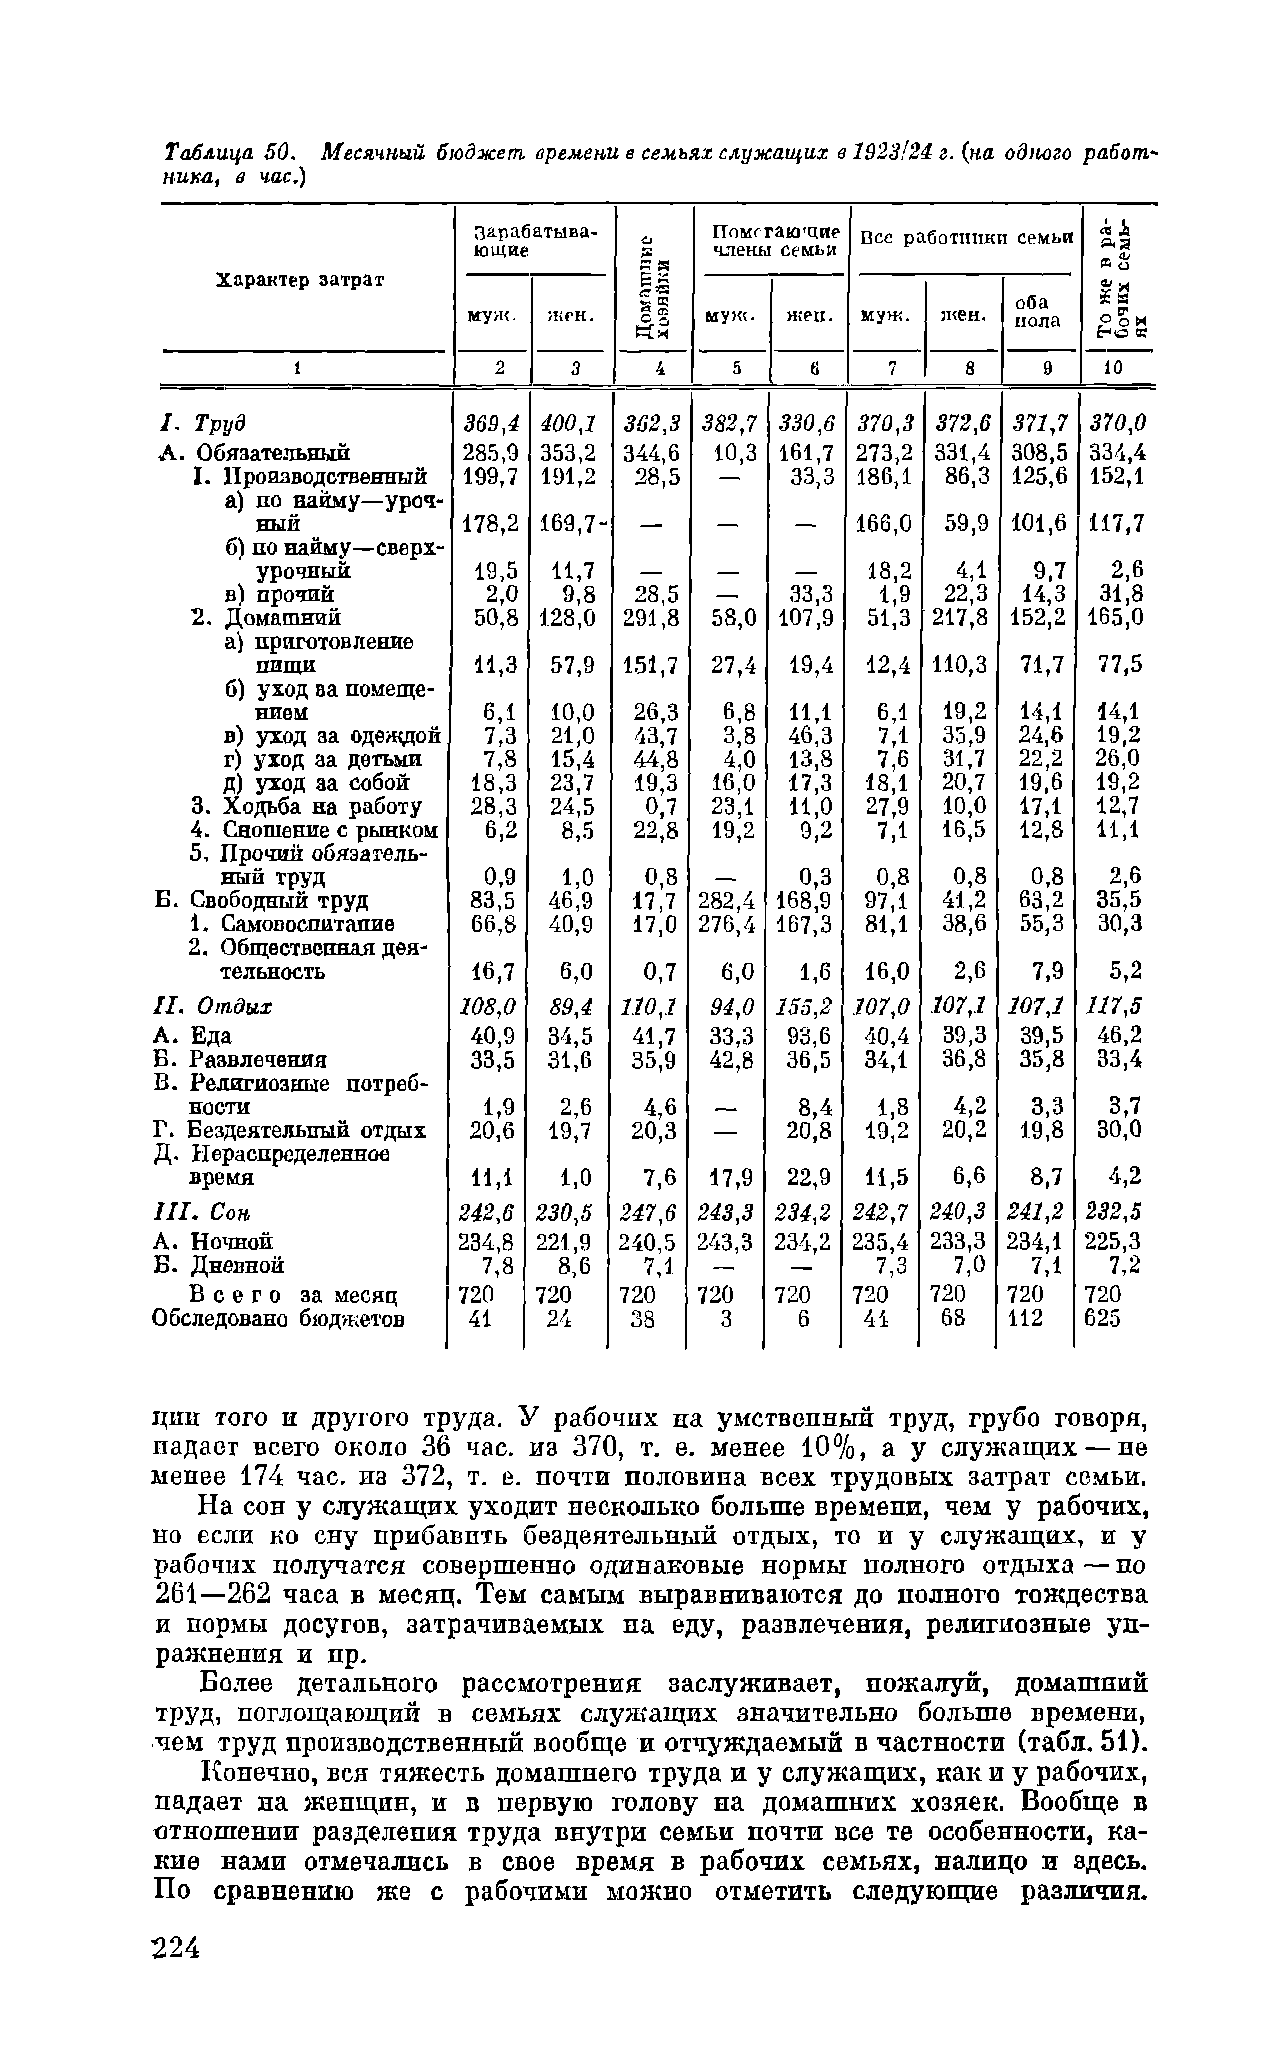 Таблица SO, Месячный бюджет, времени в семьях служащих в 1923/24 г. (но одного работника, в час.)
